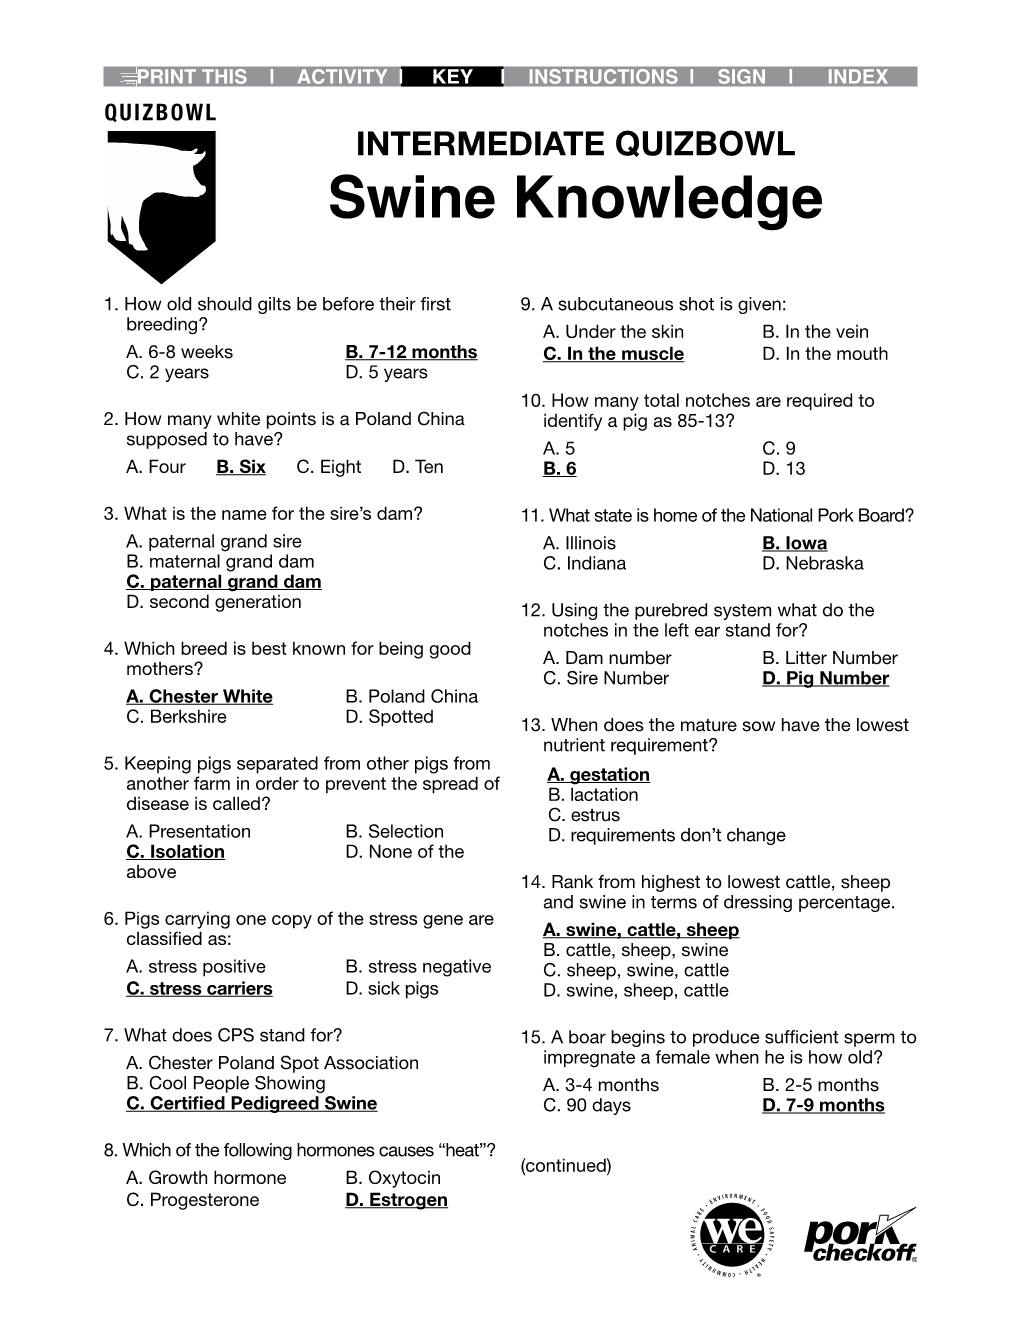 Swine Knowledge